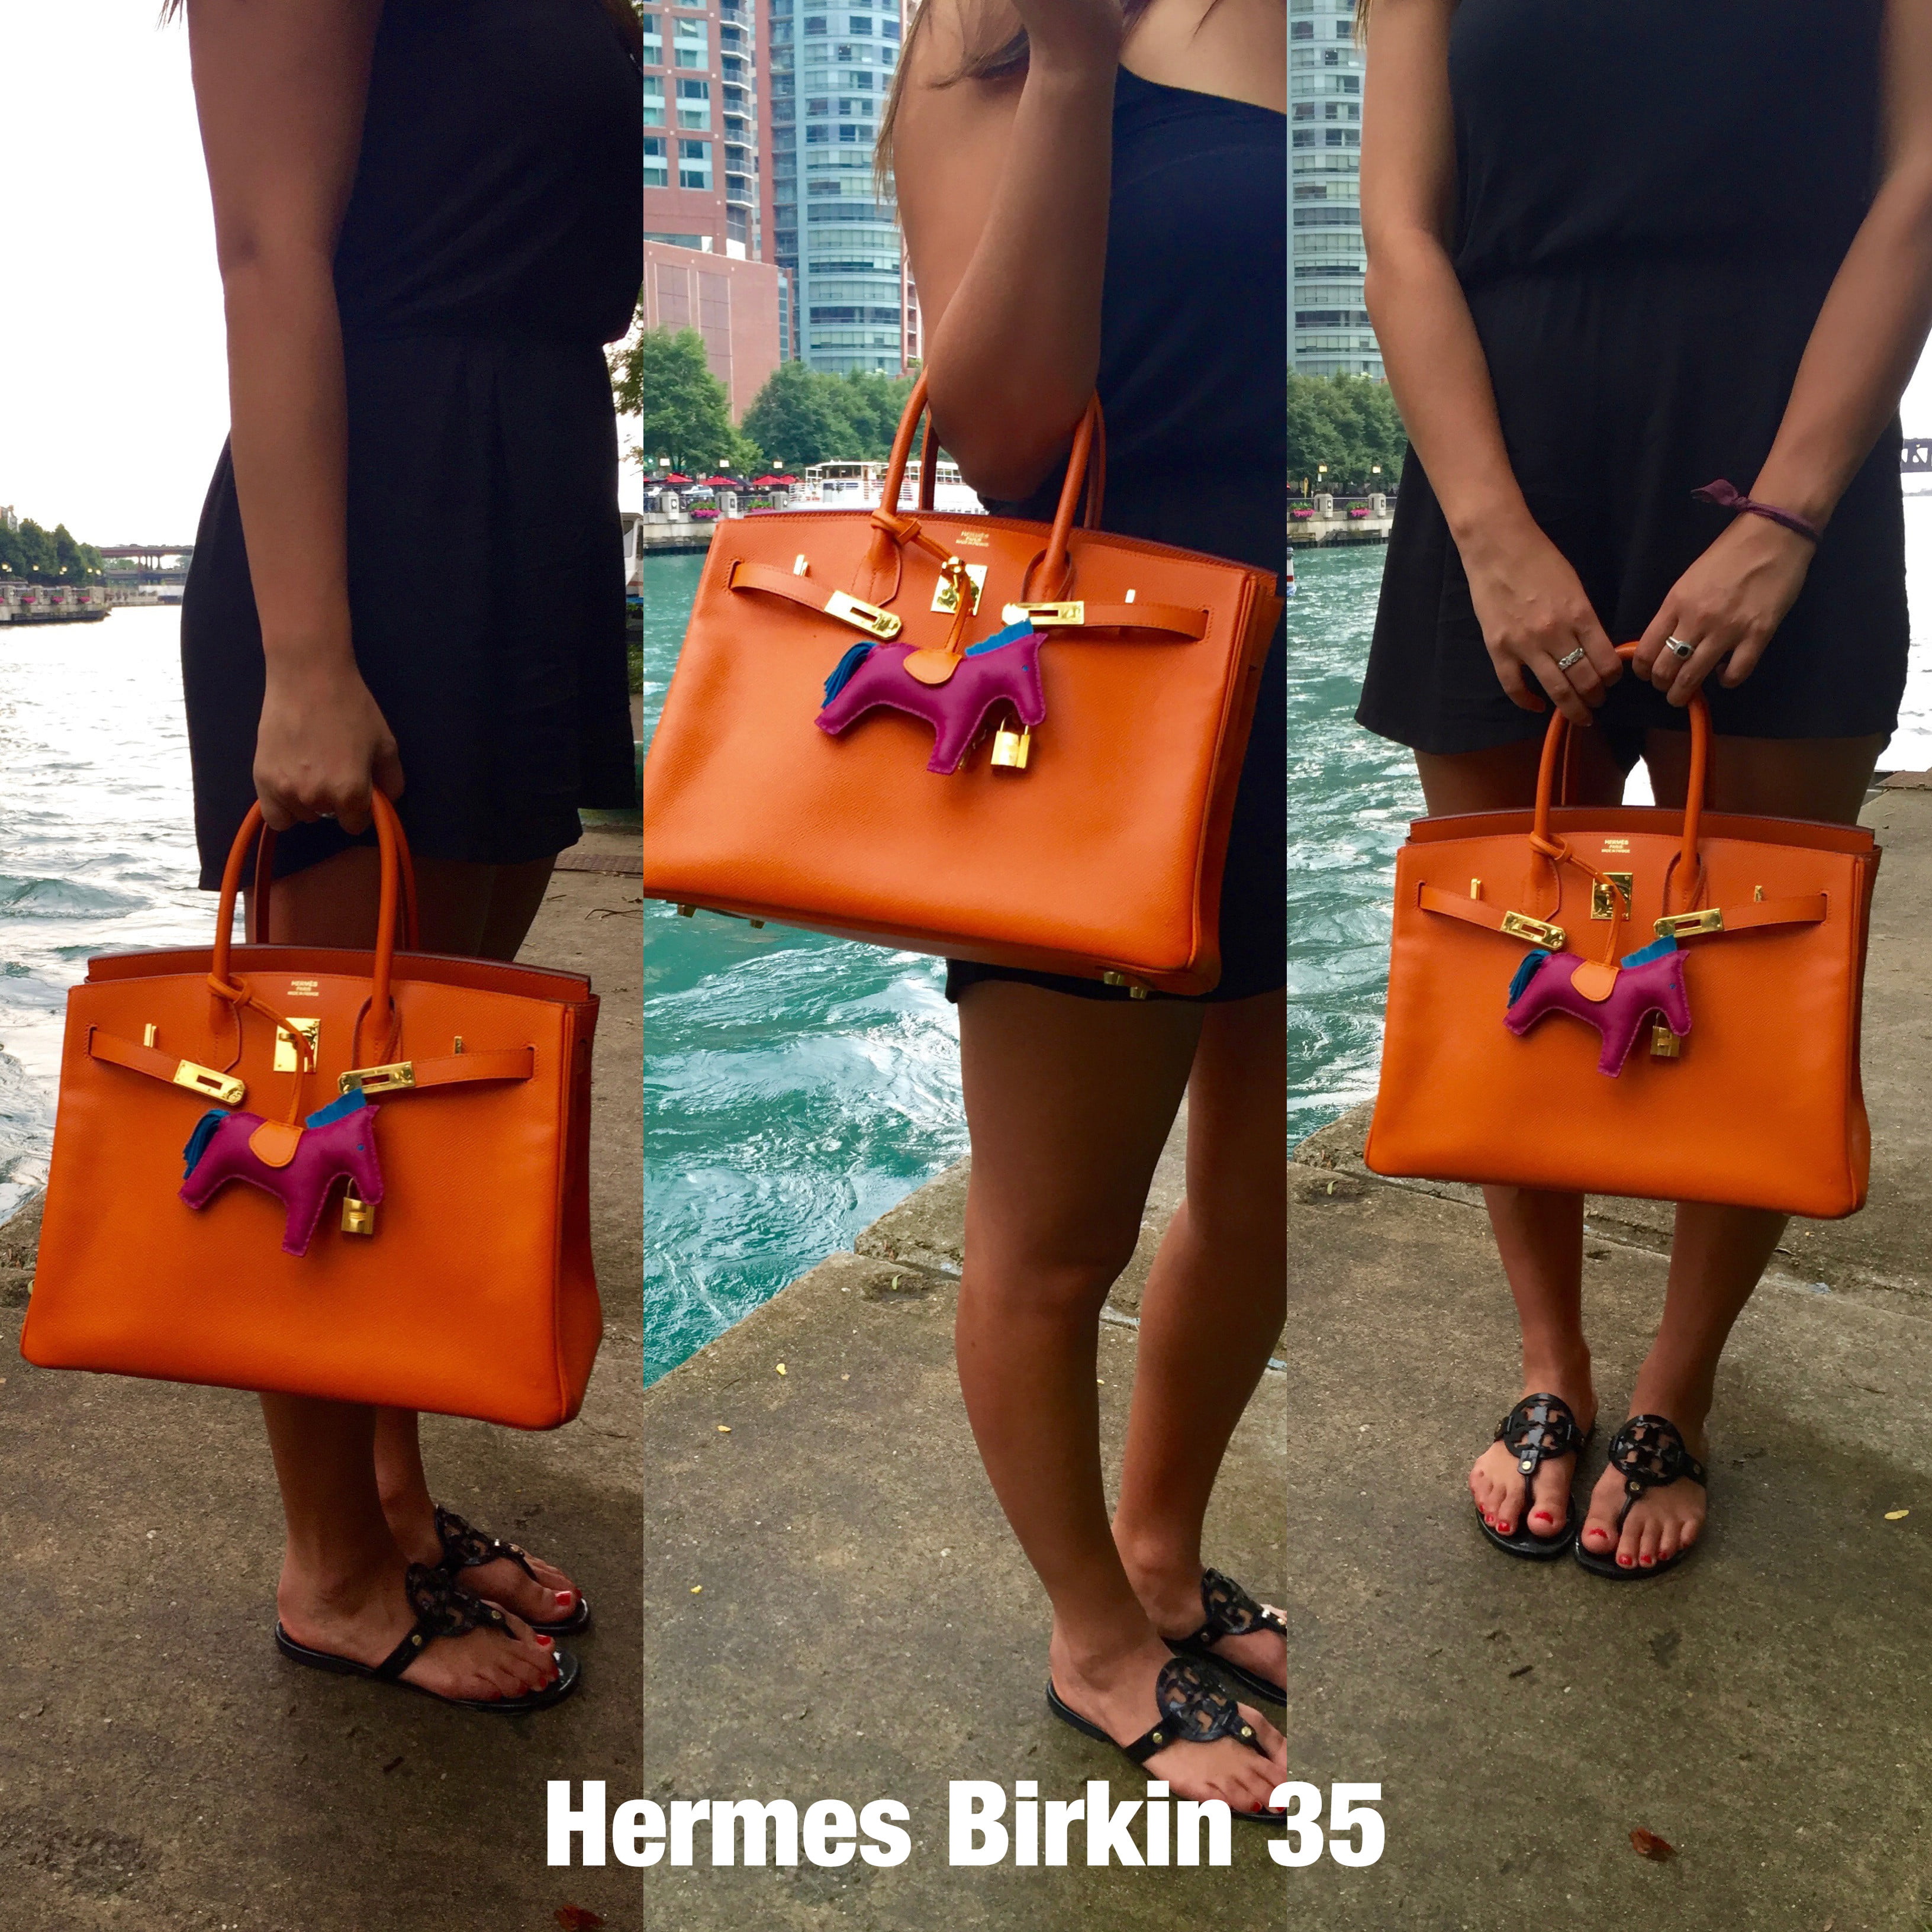 Which is The Best Hermès Birkin Size?